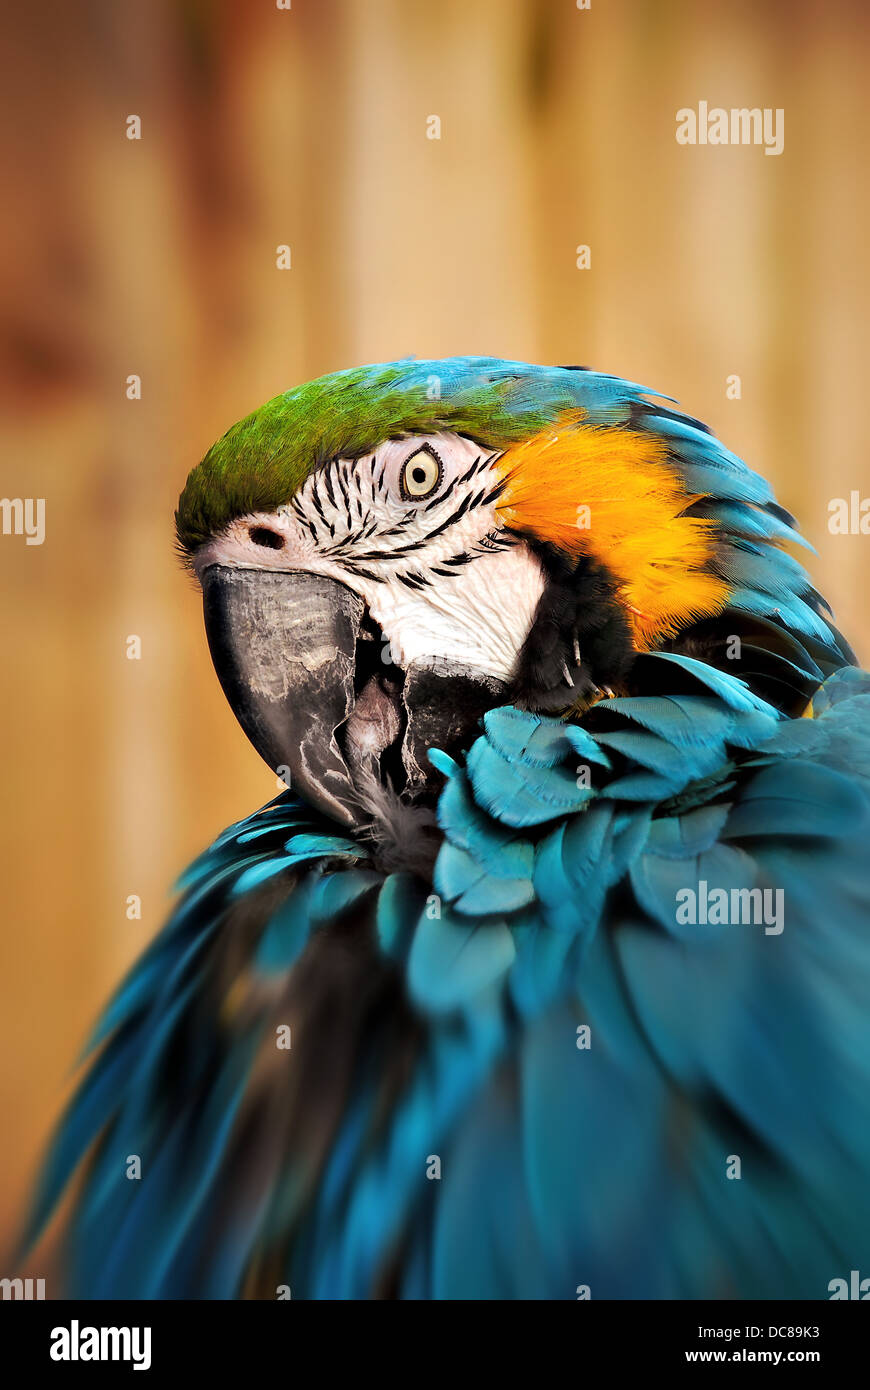 Blue macaw ritratto zoo wild specie in via di estinzione Foto Stock